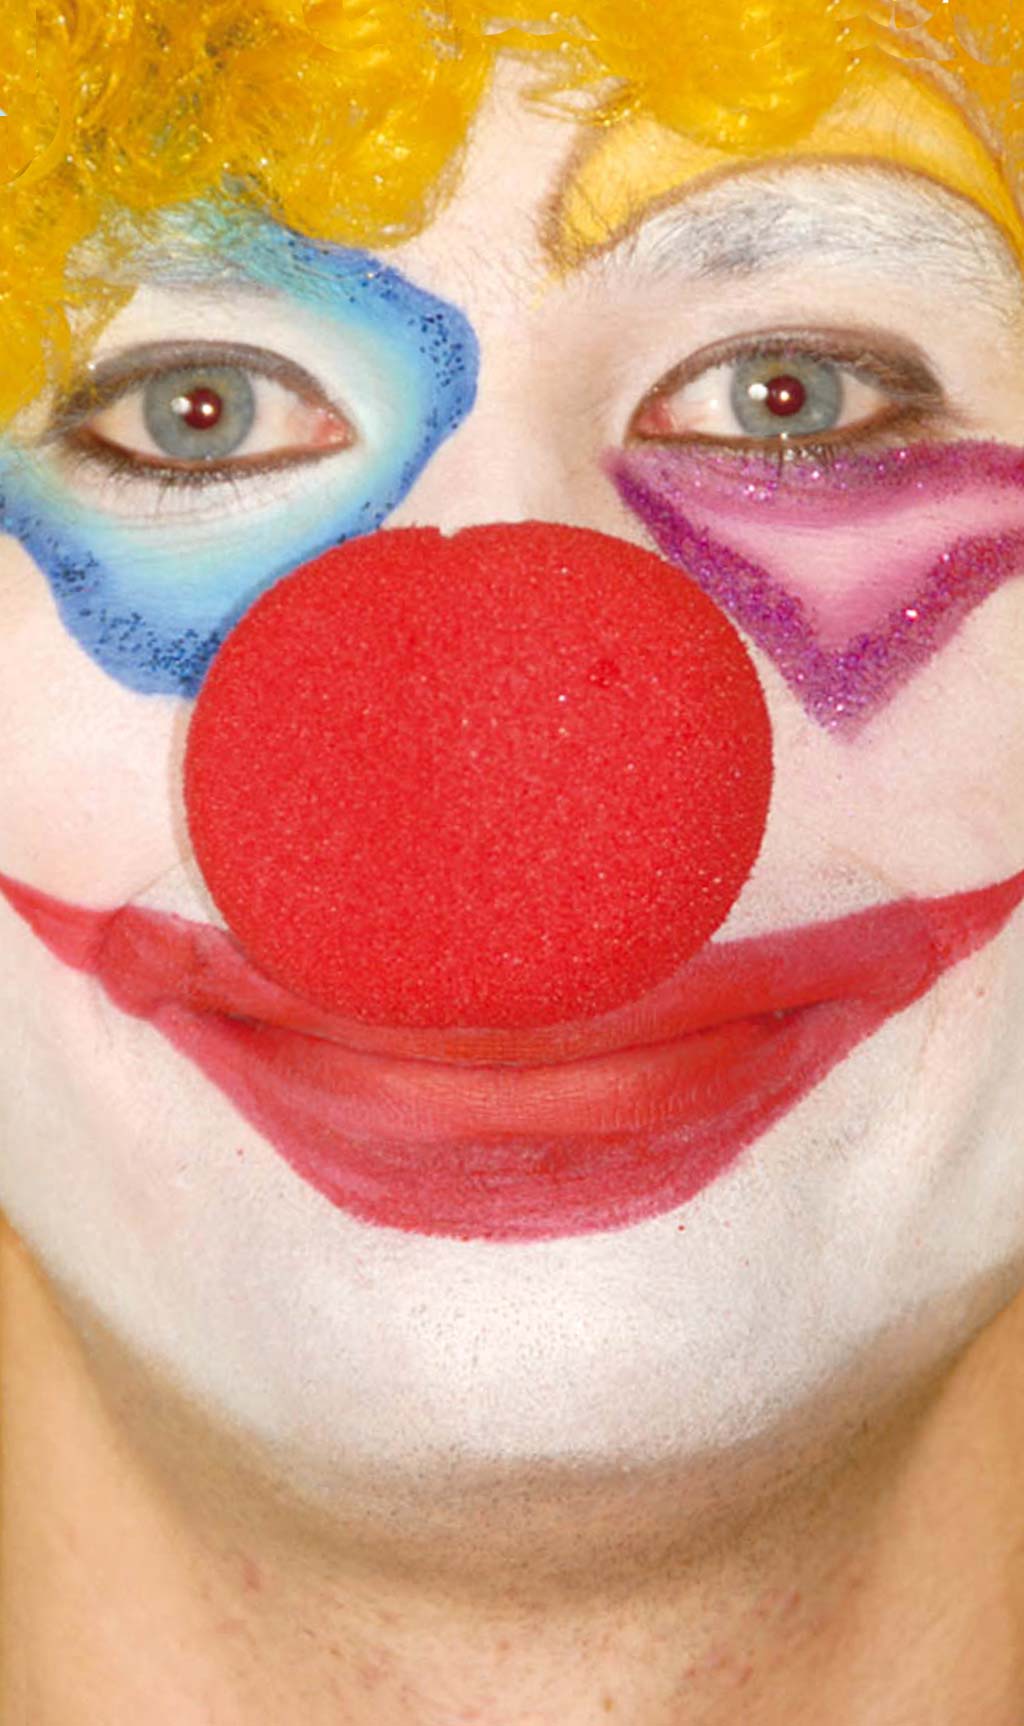 Naso rosso da clown silicone - rosso - Kiabi - 1.00€